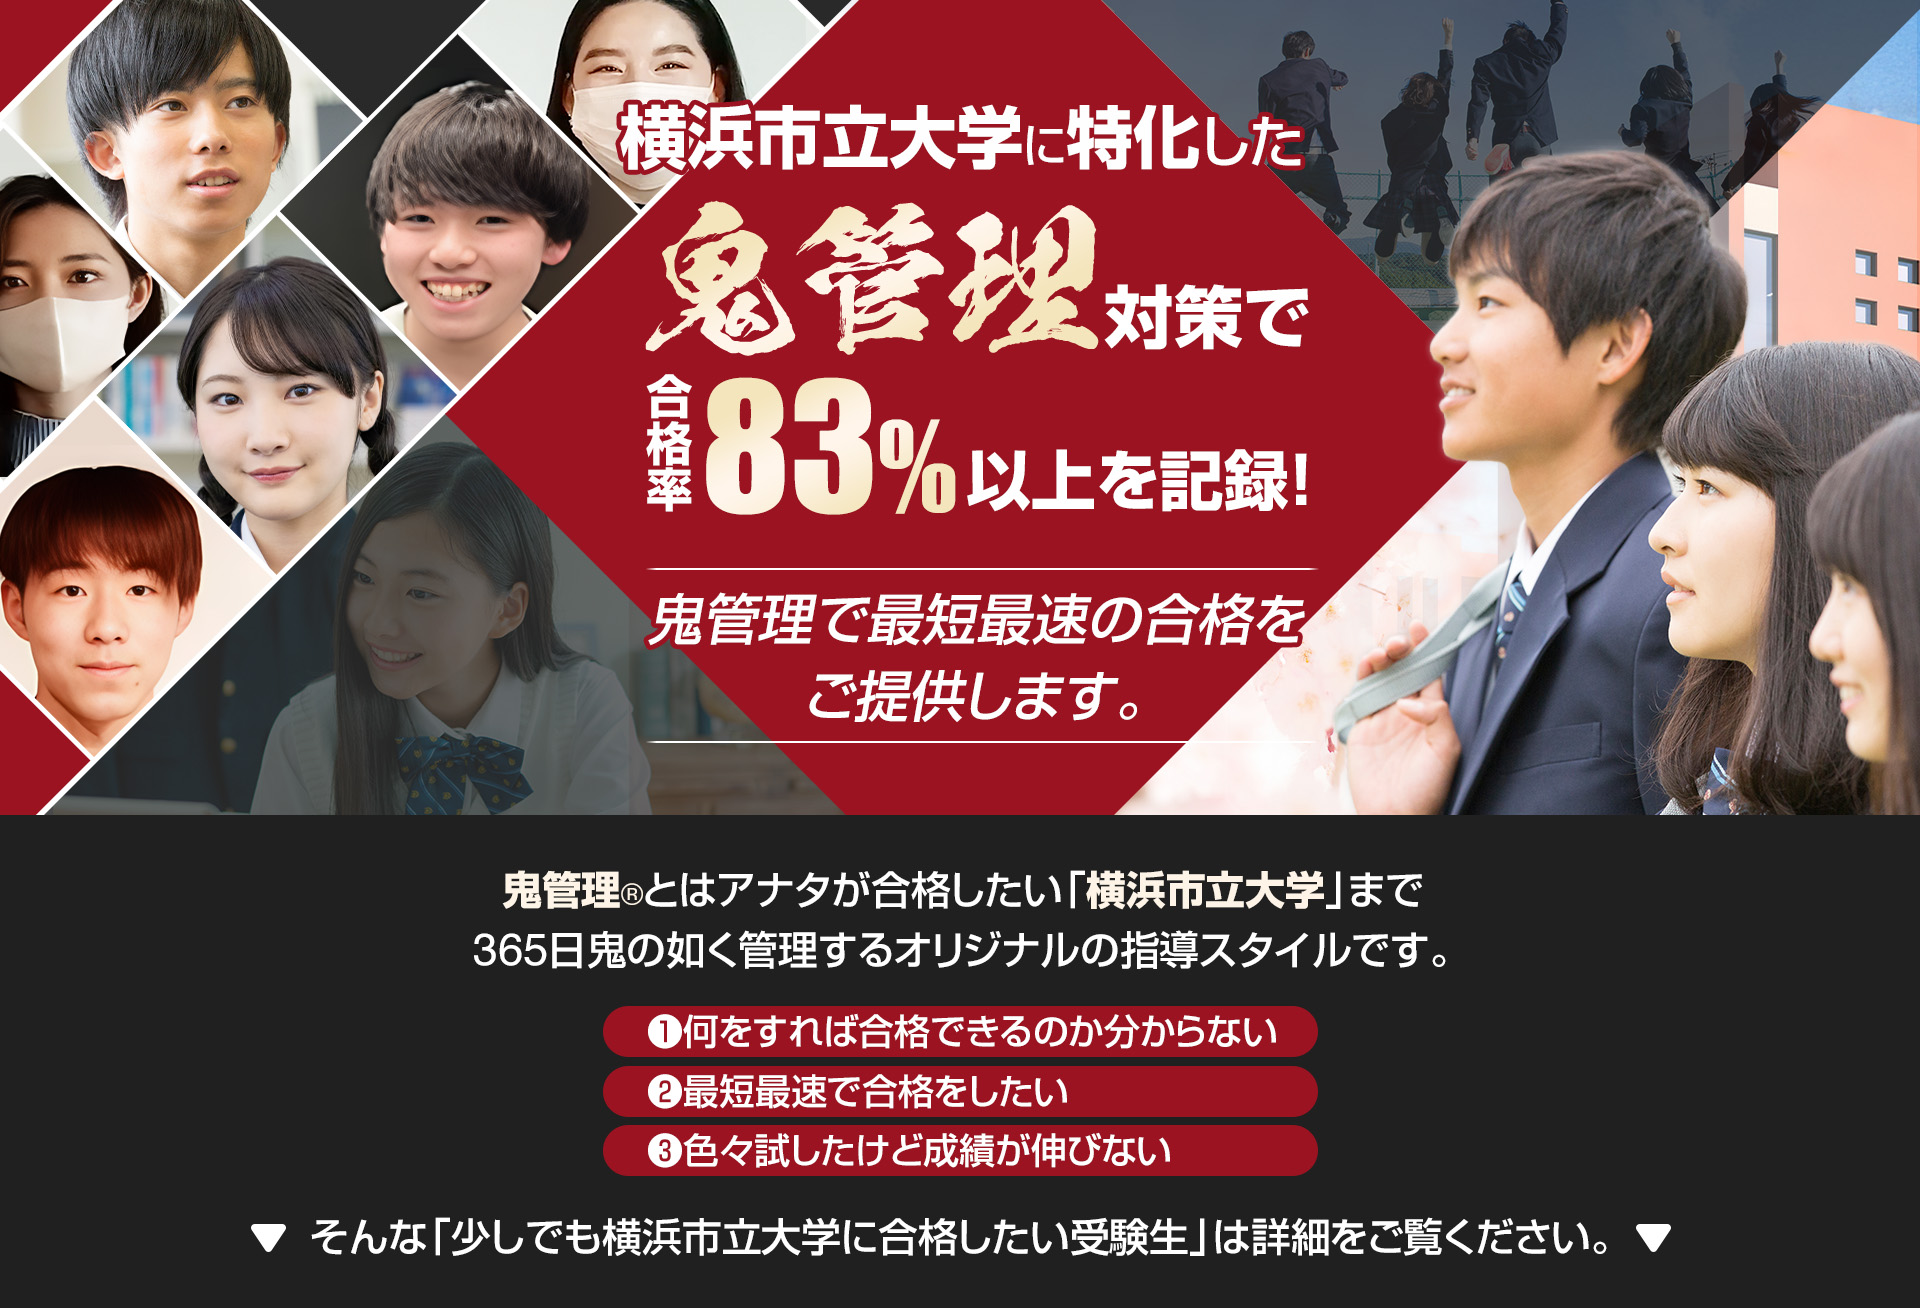 横浜市立大学に特化した鬼管理対策で合格率83％以上を記録。鬼管理でアナタが合格したい横浜市立大学への最短最速の合格を提供します。